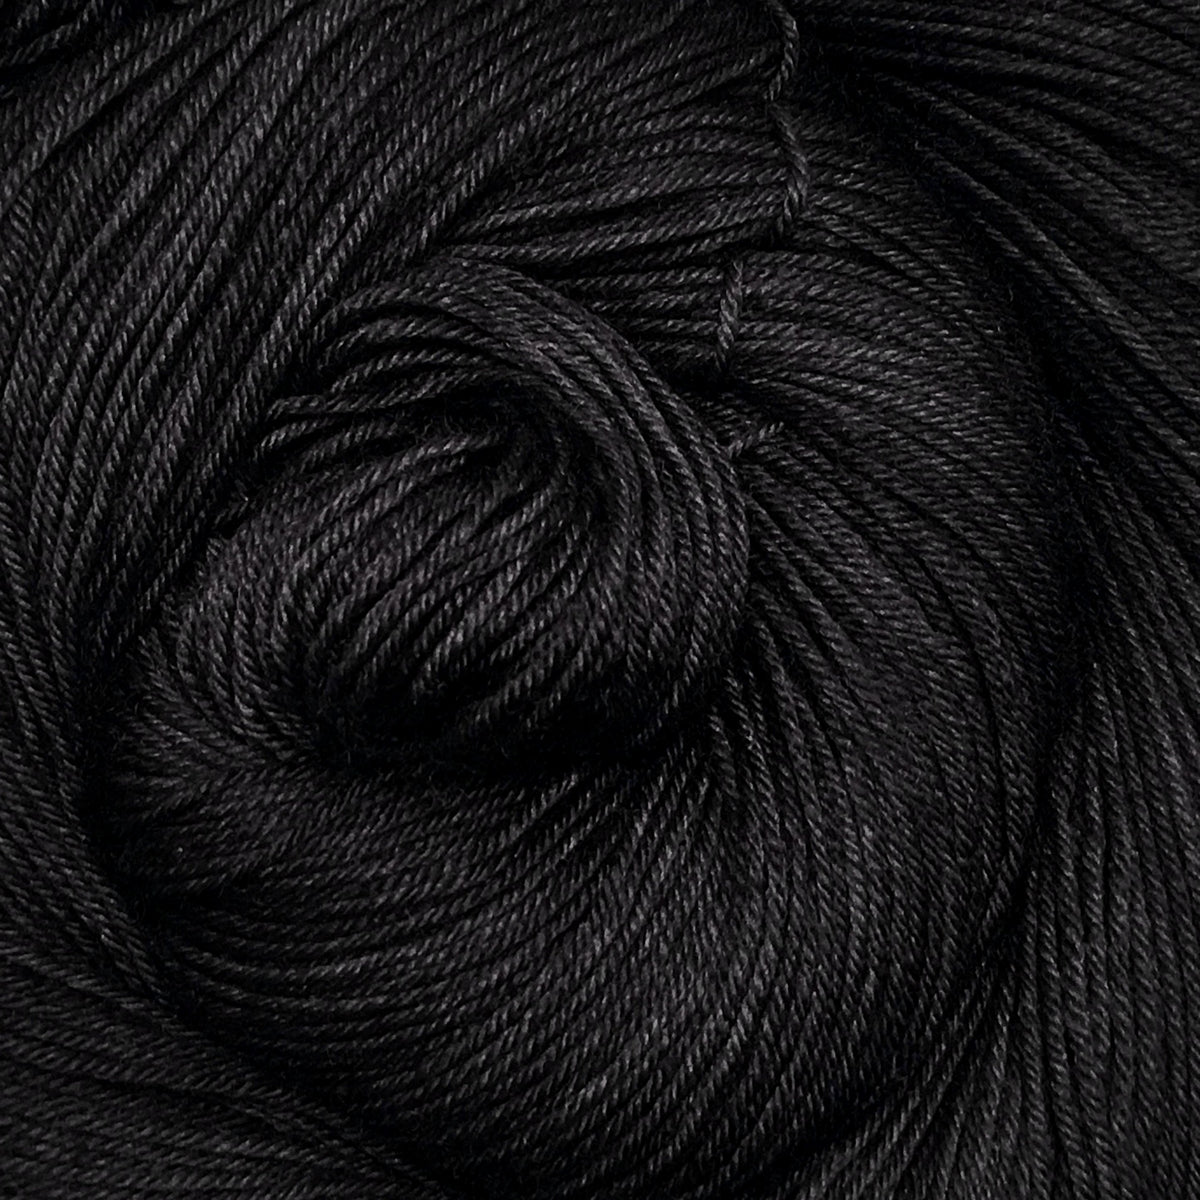 Undyed wool sock yarn 75% wool 25% nylon - The Yarn Gallery